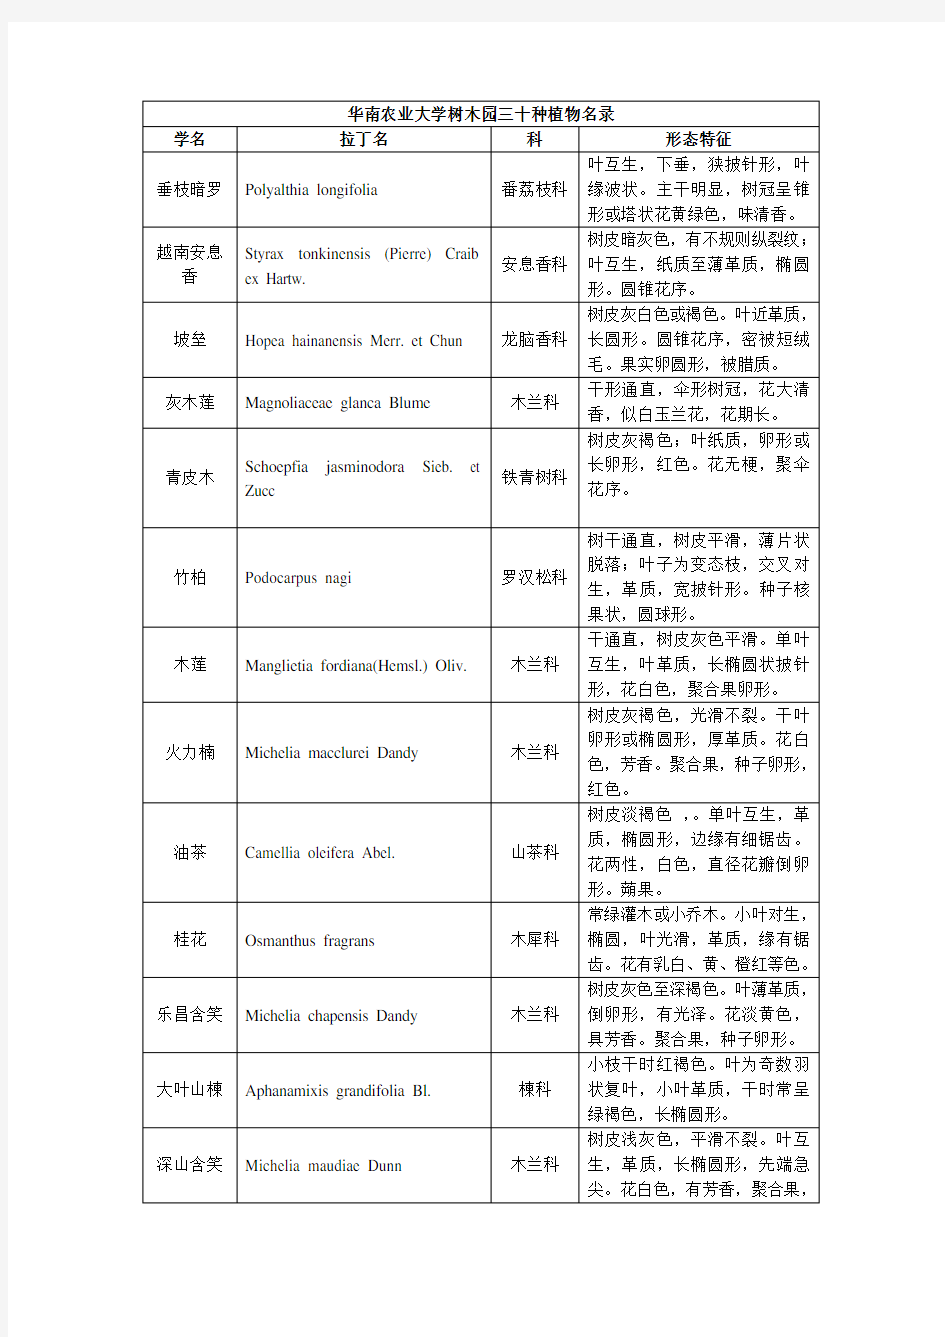 华南农业大学树木园三十种植物名录